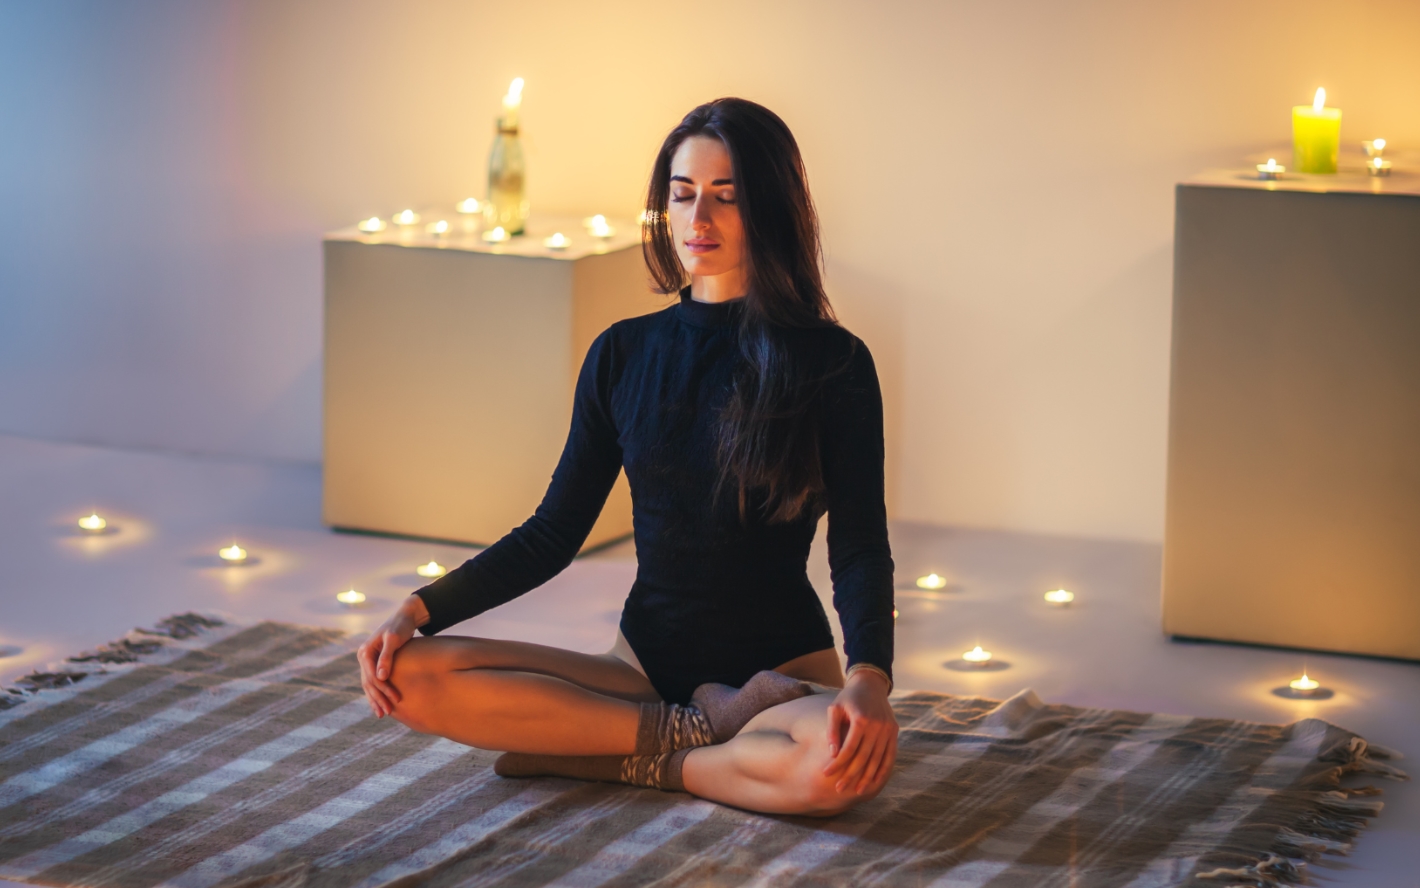  ¡Transforma tu vida con la meditación! Descubre cómo meditar y los beneficios de meditar todos los días.